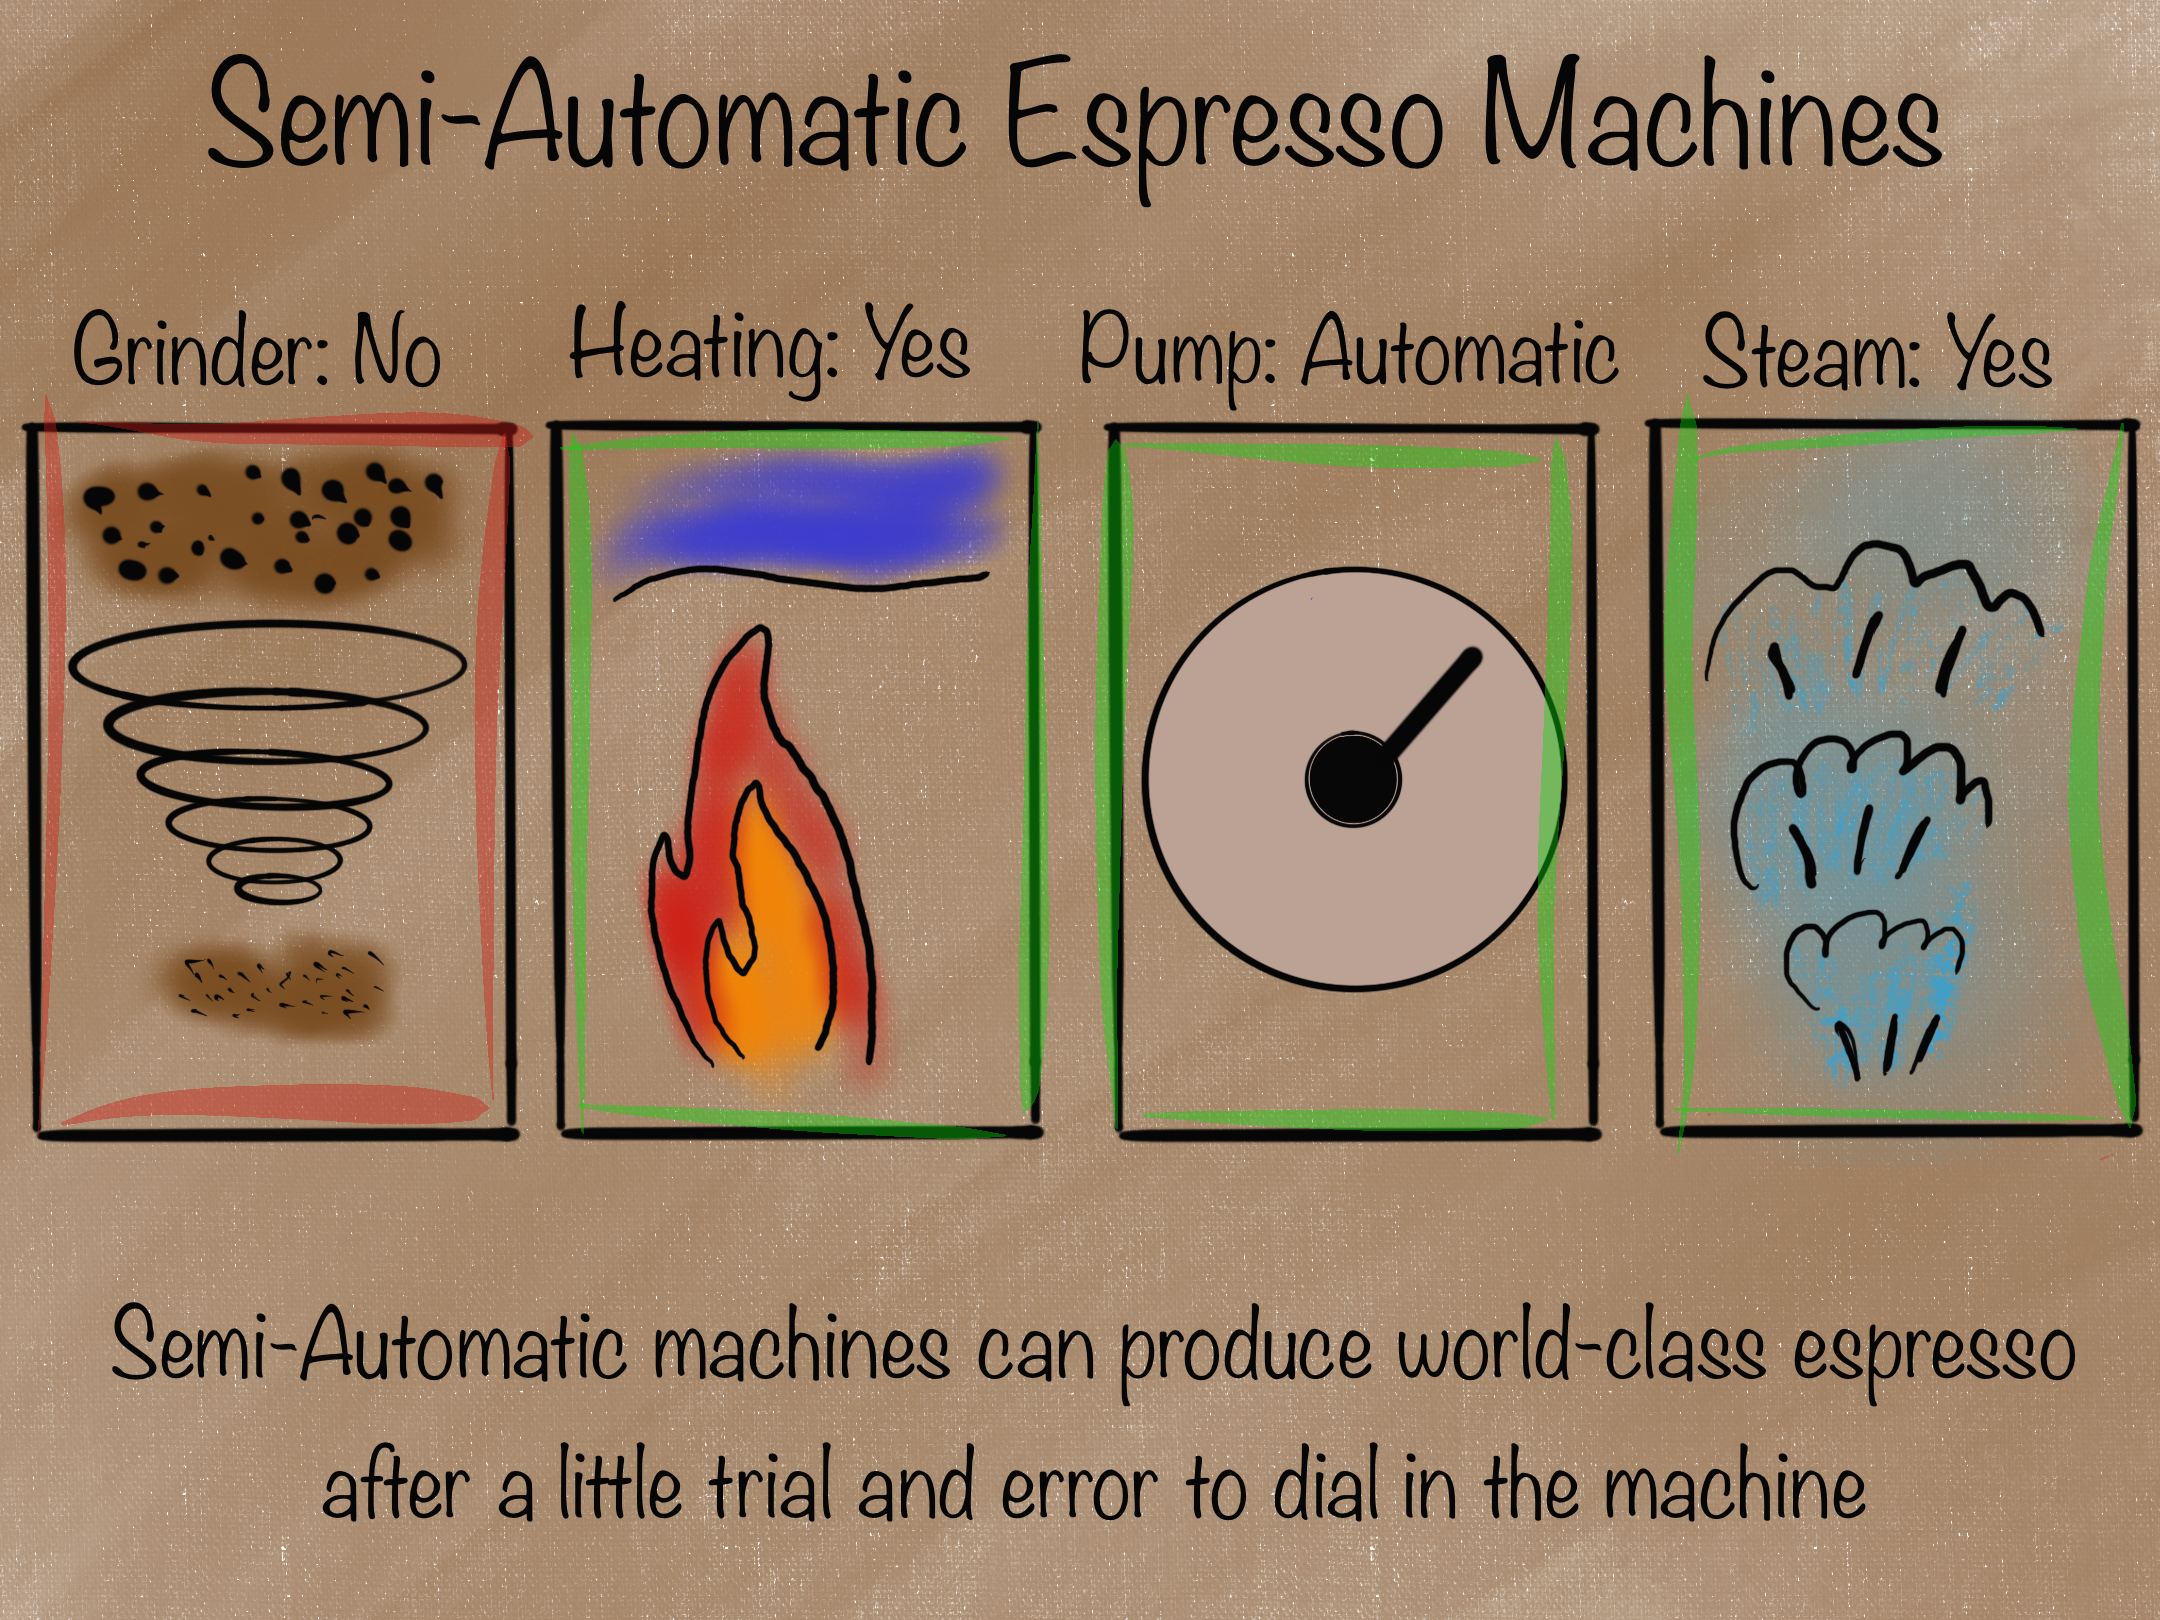 Semi-Automatic Espresso Machine Overview